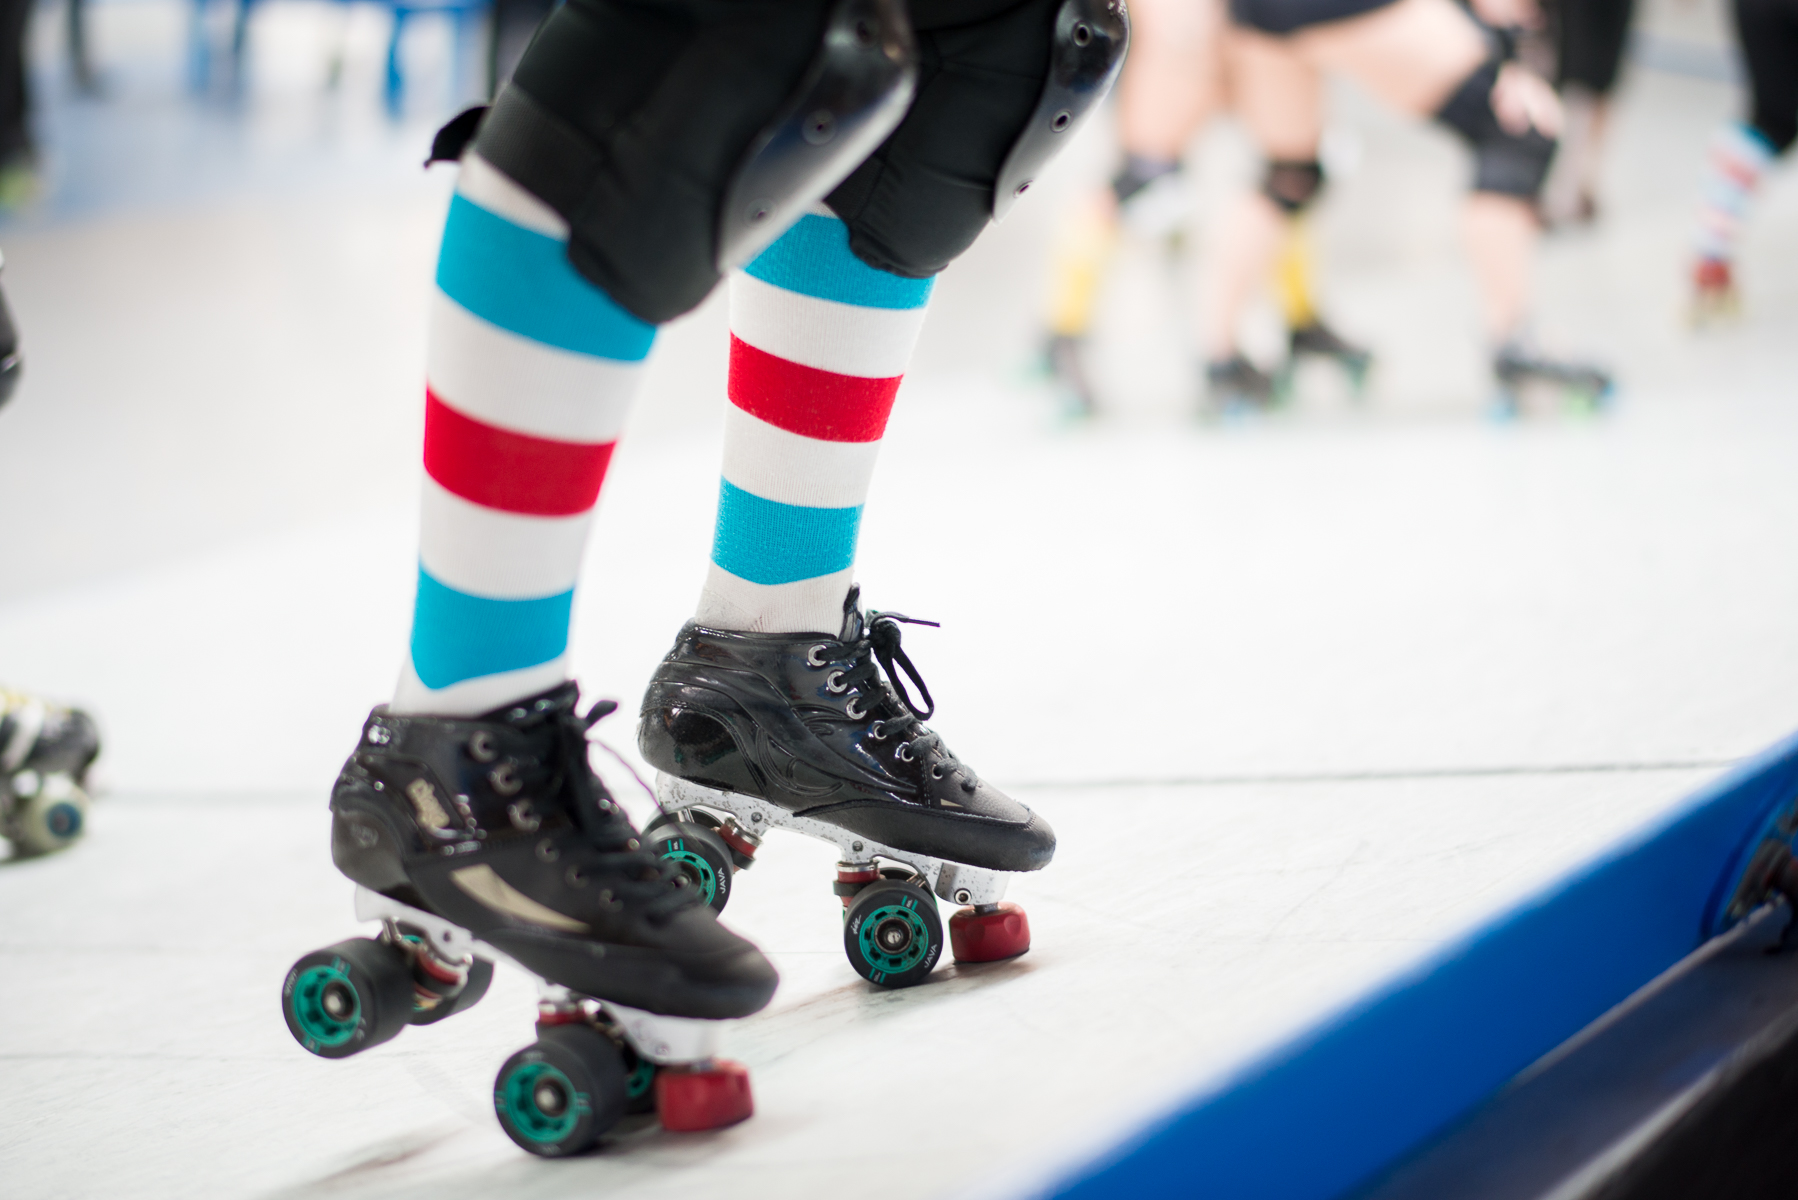 Roller derby skates on banked track